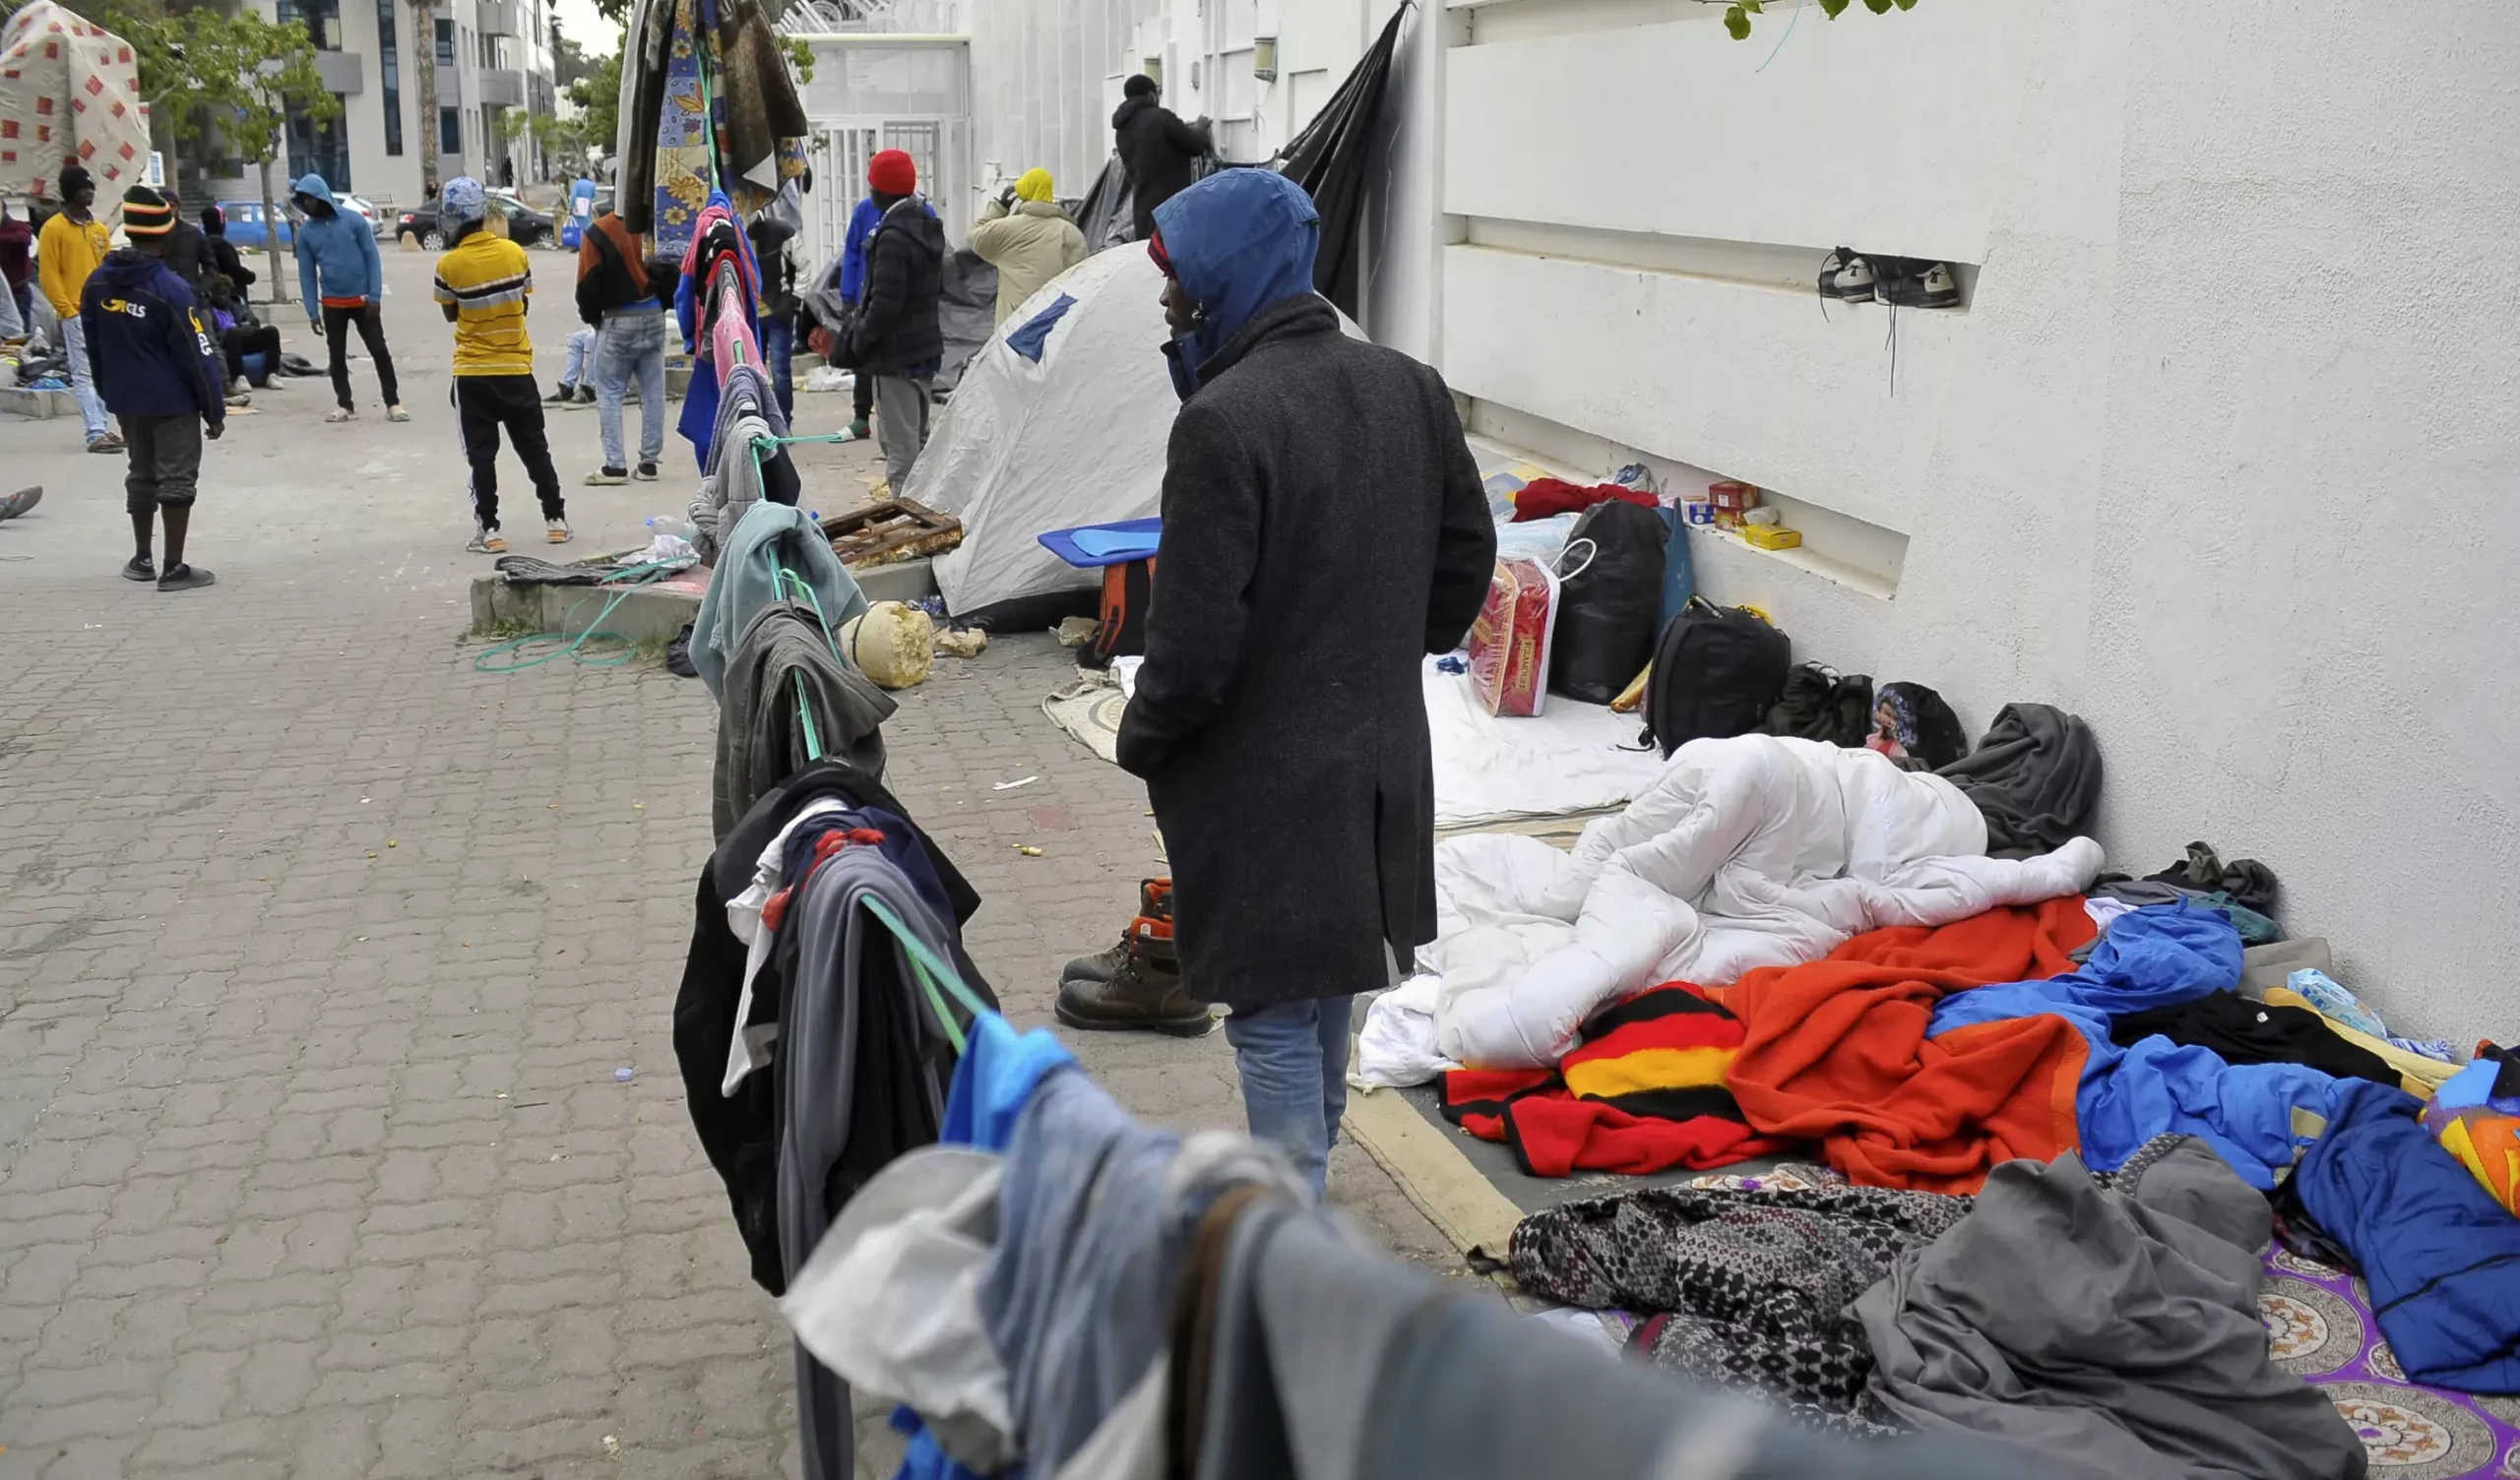 Europa se hai ancora un briciolo di umanità ferma il pogrom di migranti in Tunisia